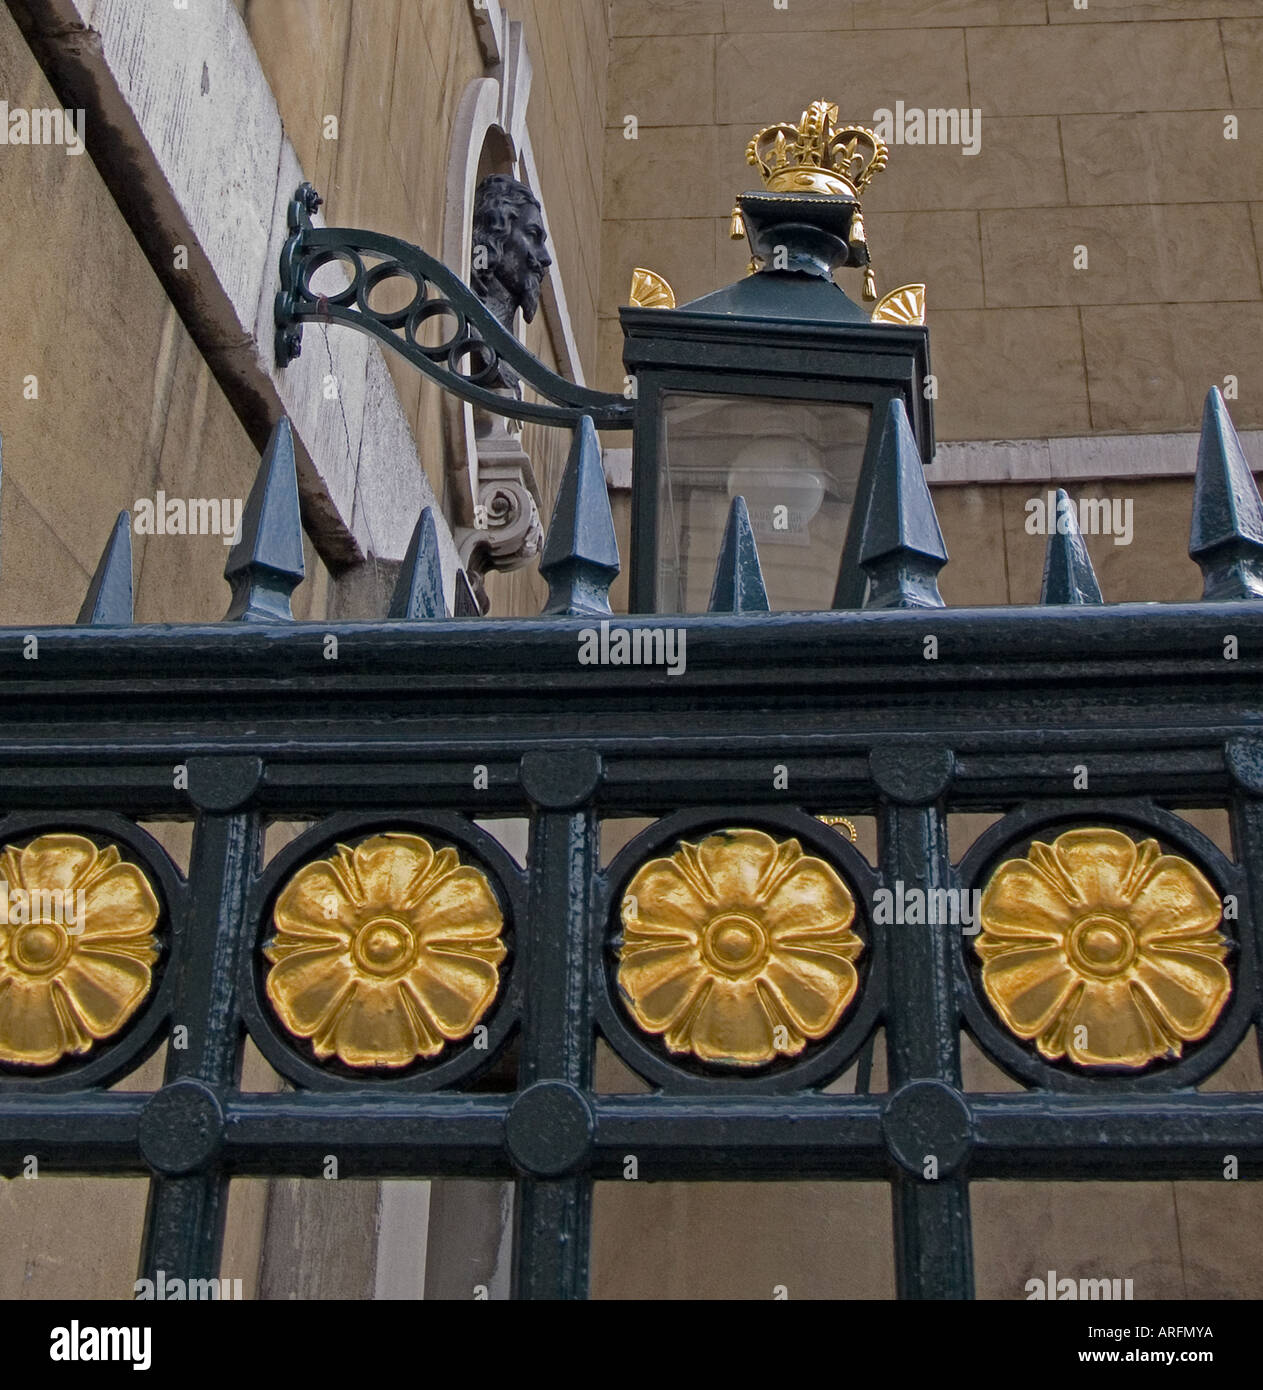 Buste du roi Charles le premier en dehors de la Banqueting House Whitehall London England UK Banque D'Images